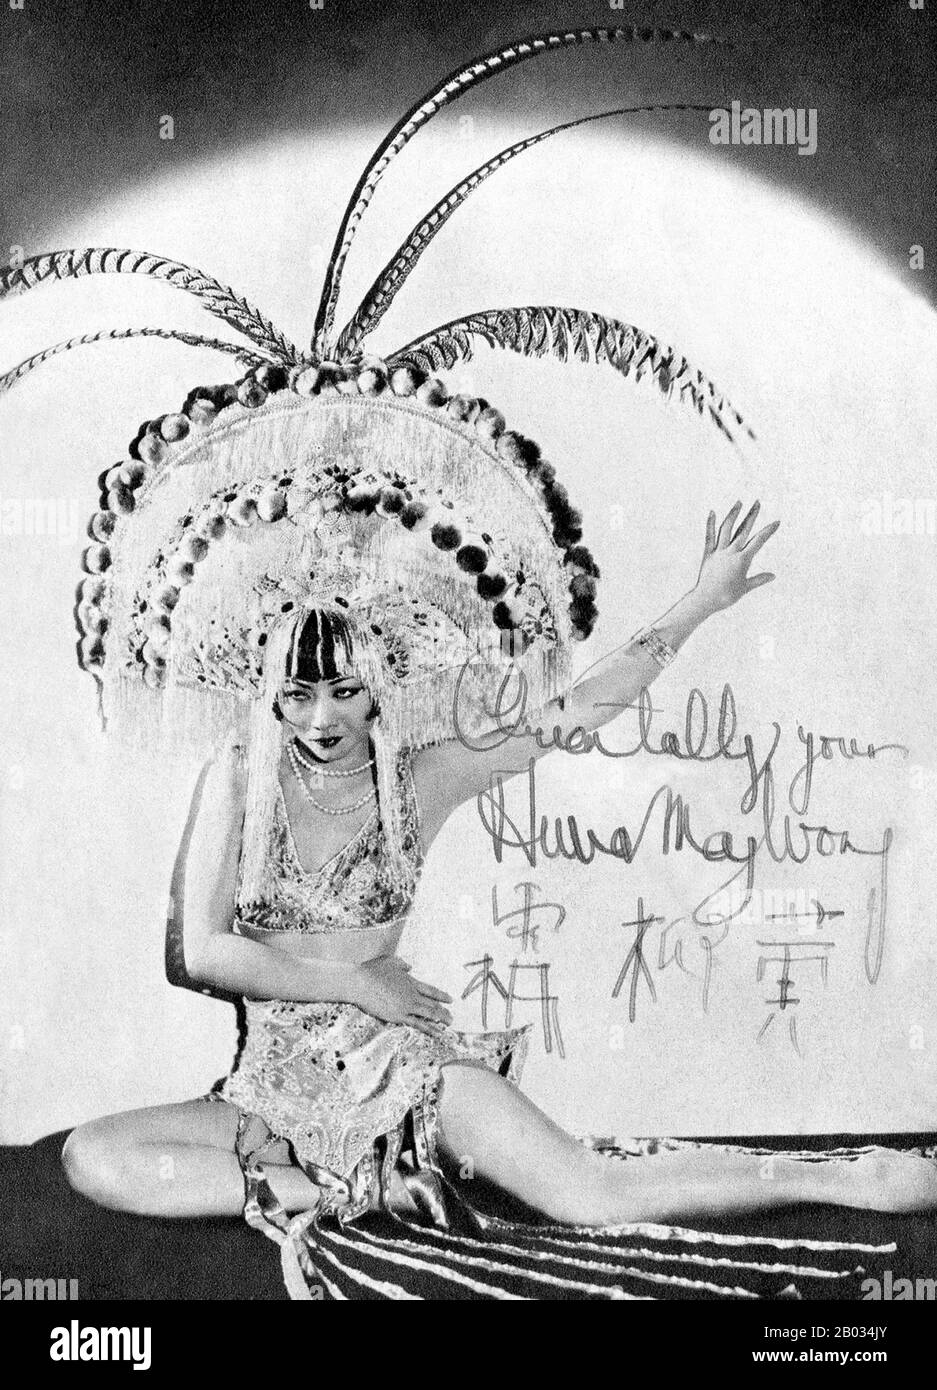 Anna May Wong (* 3. Januar 1905 in New York; † 3. Februar 1961) war eine US-amerikanische Schauspielerin, der erste Chinesisch-amerikanische Filmstar und die erste Asian Amerikanerin, die zu einem internationalen Star wurde. Ihre lange und abwechslungsreiche Karriere umfasste sowohl Stummfilm als auch Tonfilm, Fernsehen, Bühne und Radio. Wong war in Filmen der frühen Tonzeit zu sehen, wie Tochter des Drachens (1931) und Tochter Shanghais (1937), und mit Marlene Dietrich in Josef von Sternbergs Shanghai-Express (1932). 1935 wurde Wong die schwerste Enttäuschung ihrer Karriere zugefügt, als Metro-Goldwyn-Mayer sich weigerte, sie für die Leadi zu halten Stockfoto